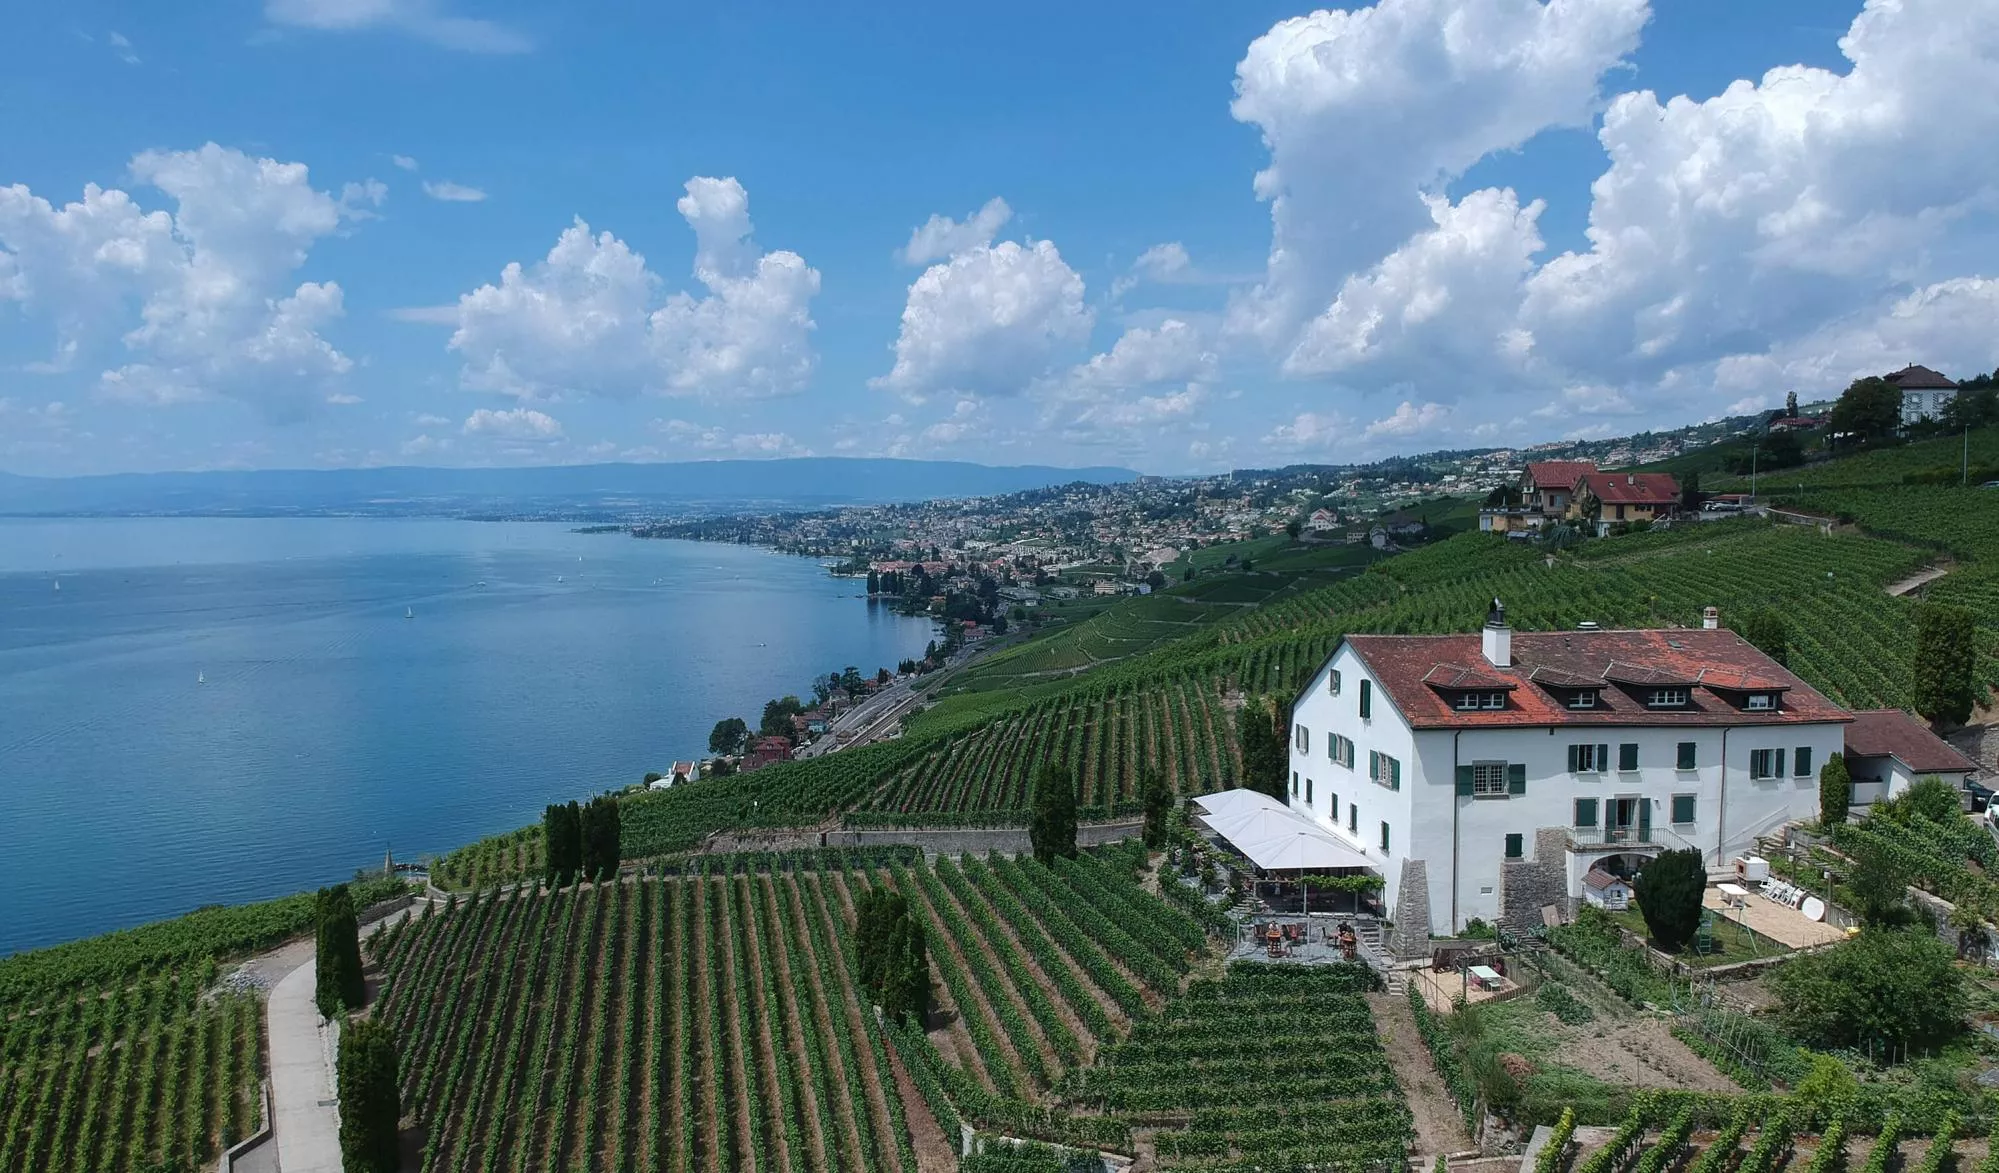 Domaine de la Crausaz in Switzerland, Europe | Wineries - Rated 0.8